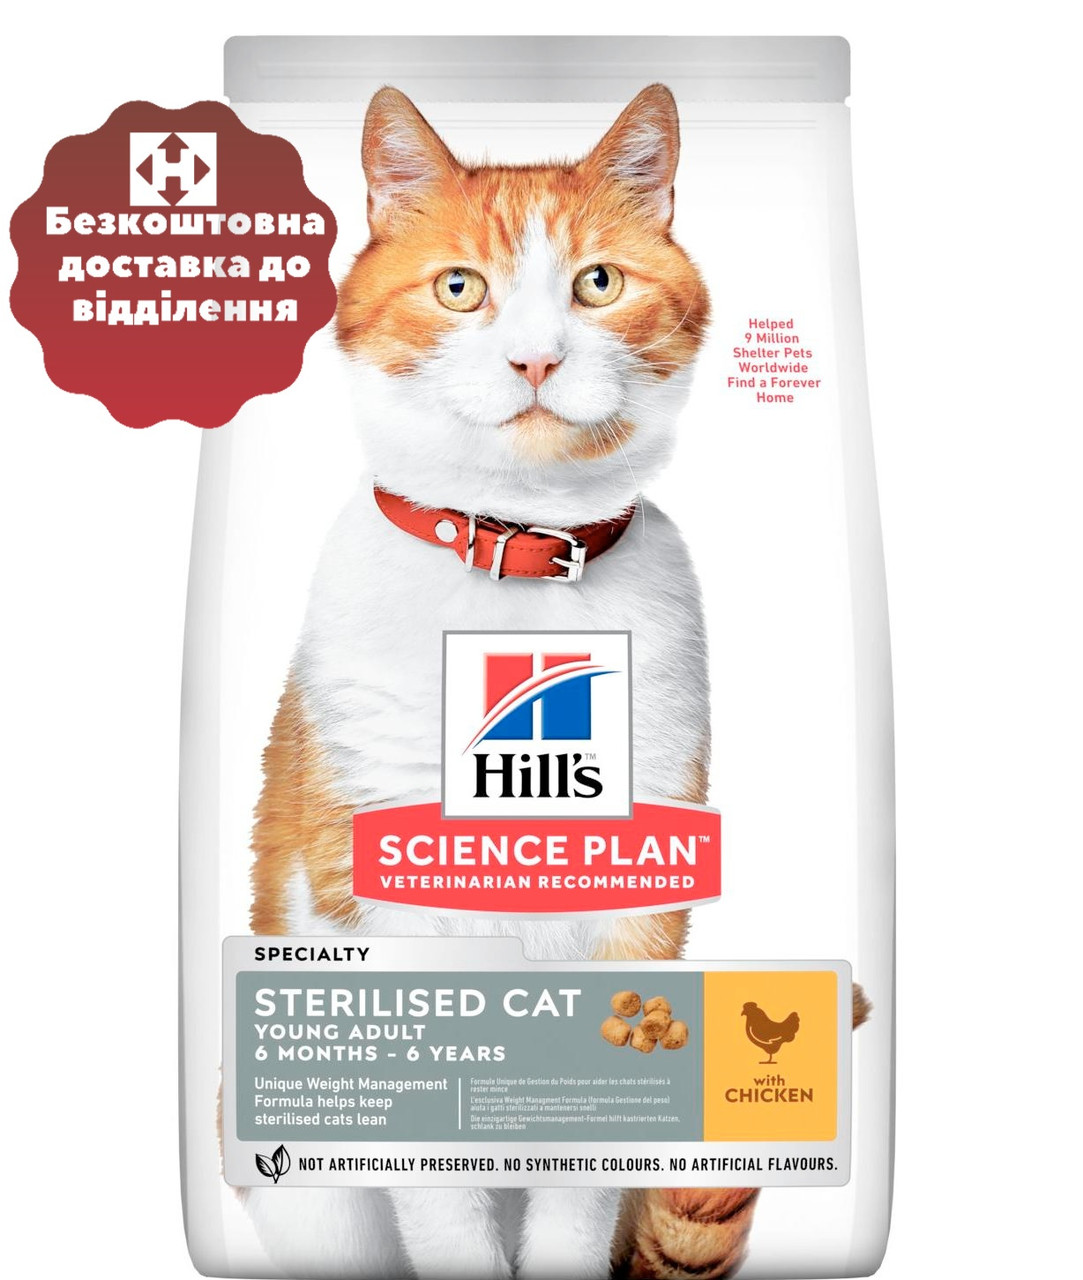 Хиллс для кошек стерилизованных сухой купить. Самый дорогой и лучшей корм для лучшей и красивой кошки с курицей.